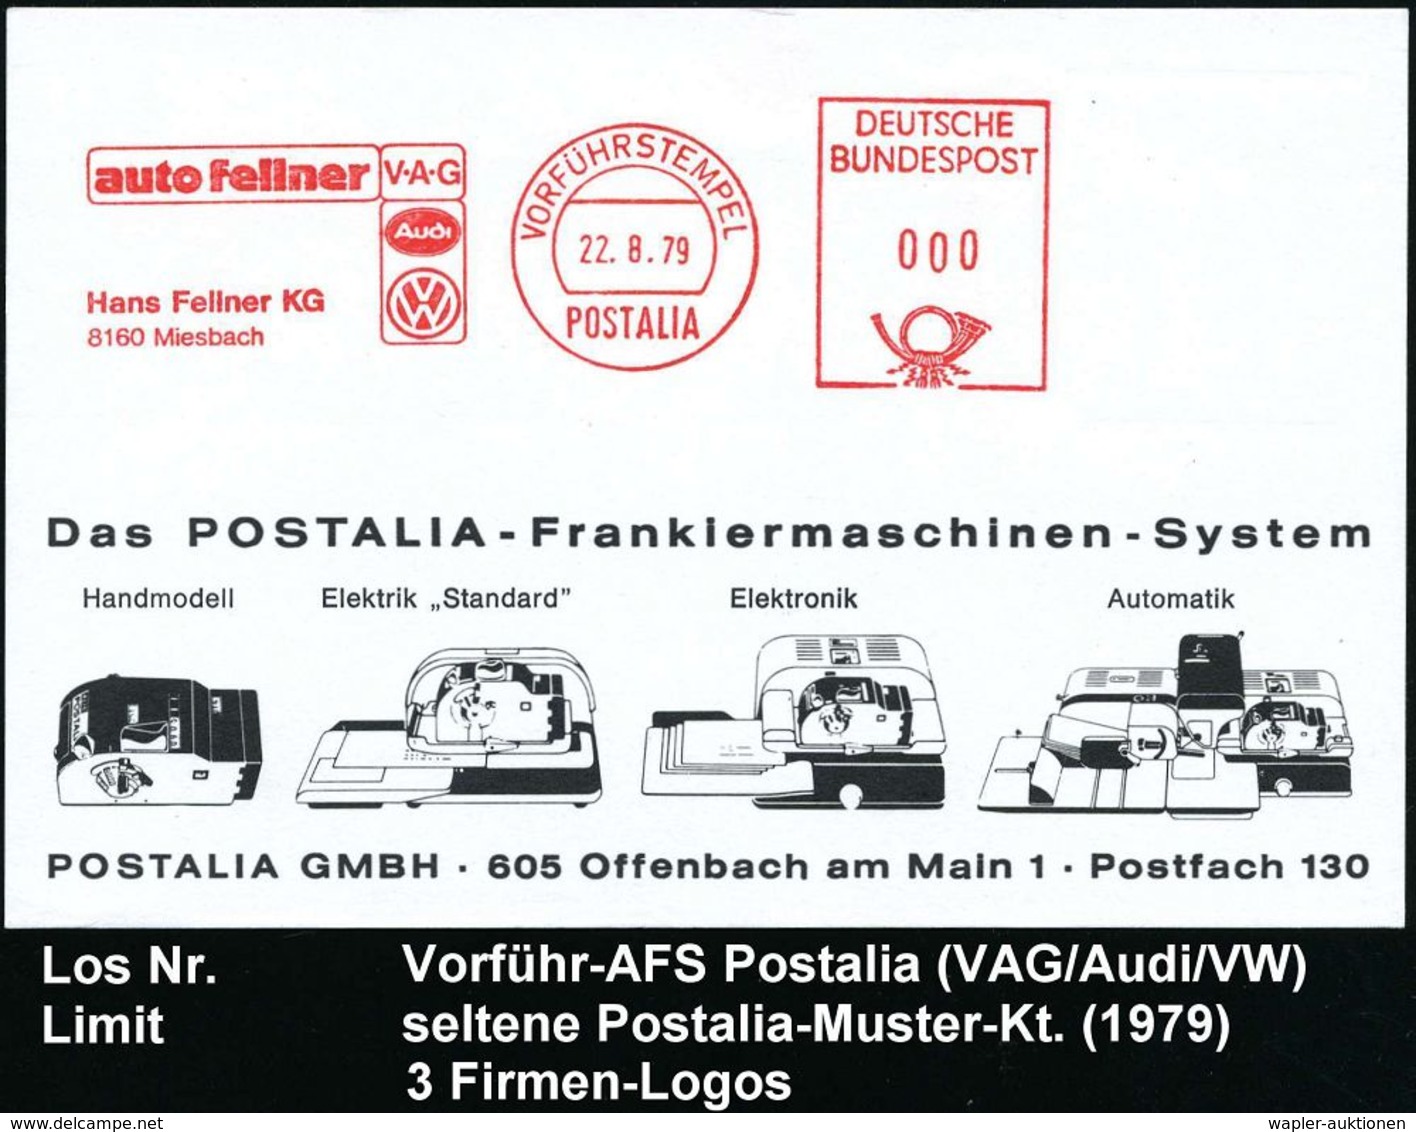 VOLKSWAGEN / VW / K.-D.-F.-WAGEN / PORSCHE : 8160 Miesbach 1979 (22.8.) AFS: VORFÜRHSTEMPEL/POSTALIA/auto Fellner/V-A-G/ - Voitures